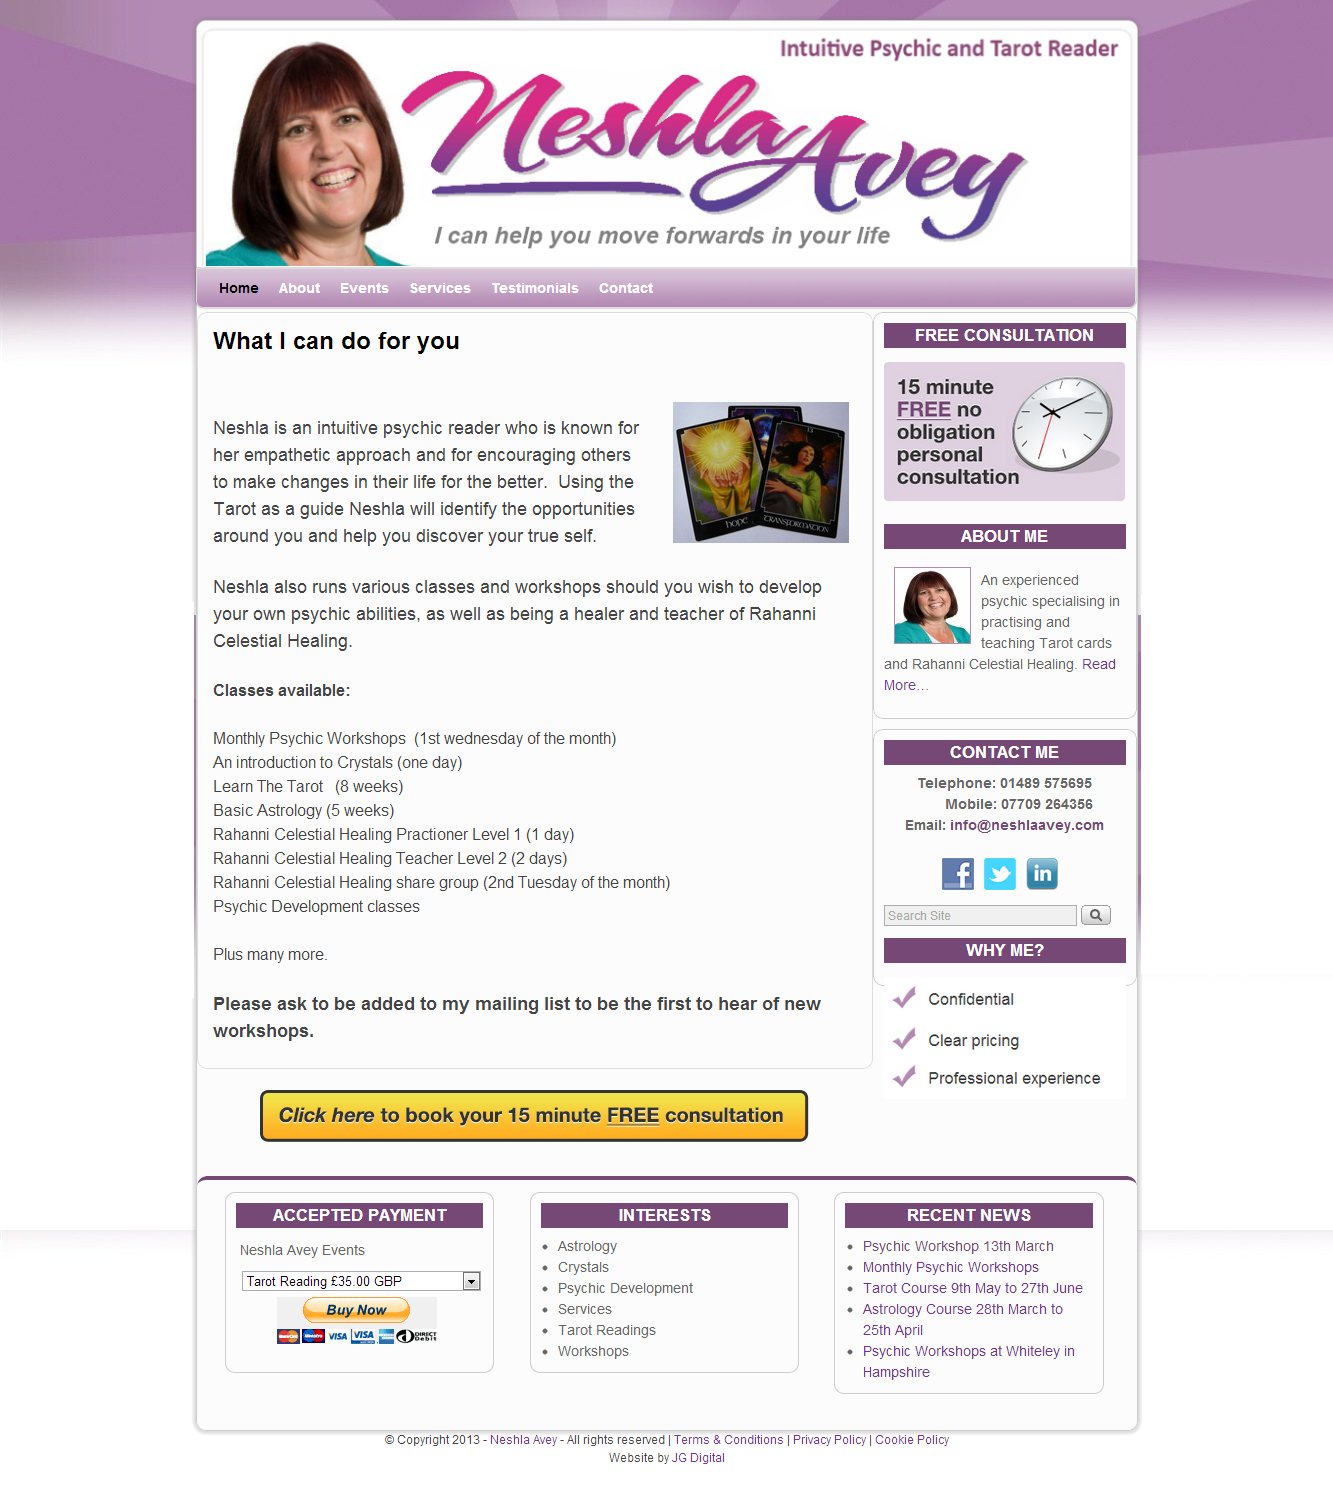 Neshla Avey - Intuitive Psychic and Tarot Reader